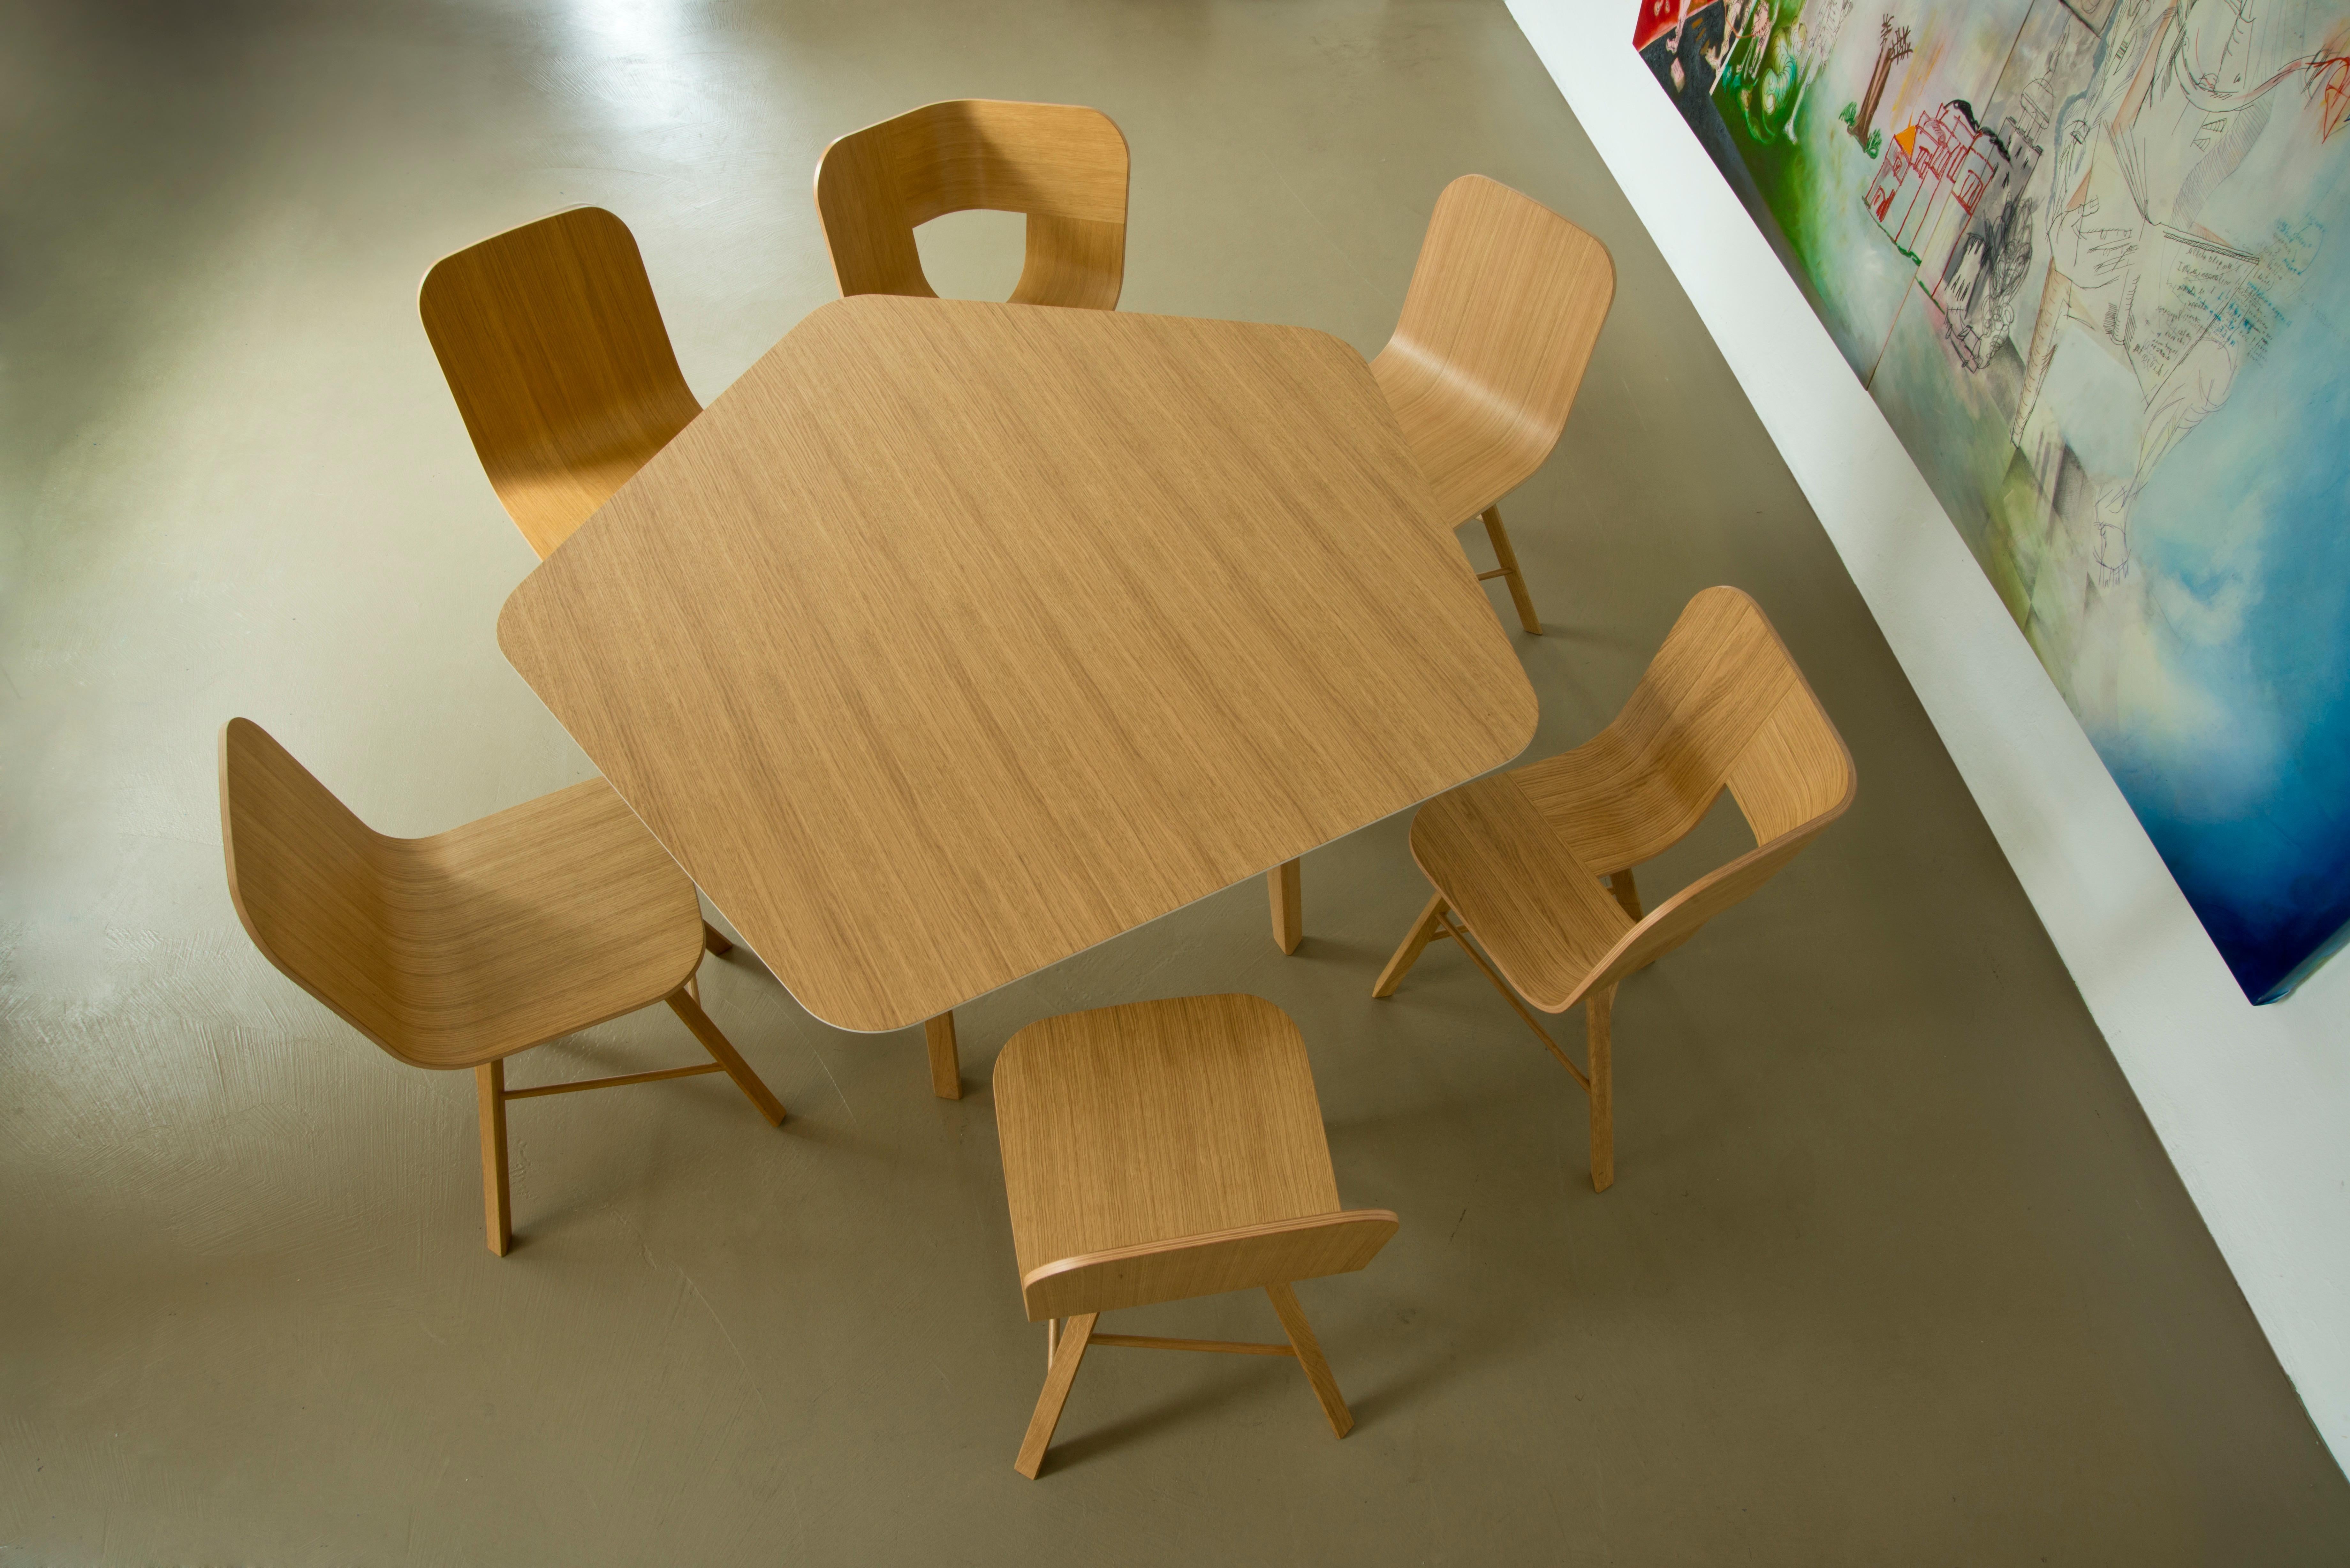 Tria Tetra Square Table, Oak, Minimalist Design Icon Inspired to Graphic Art For Sale 3